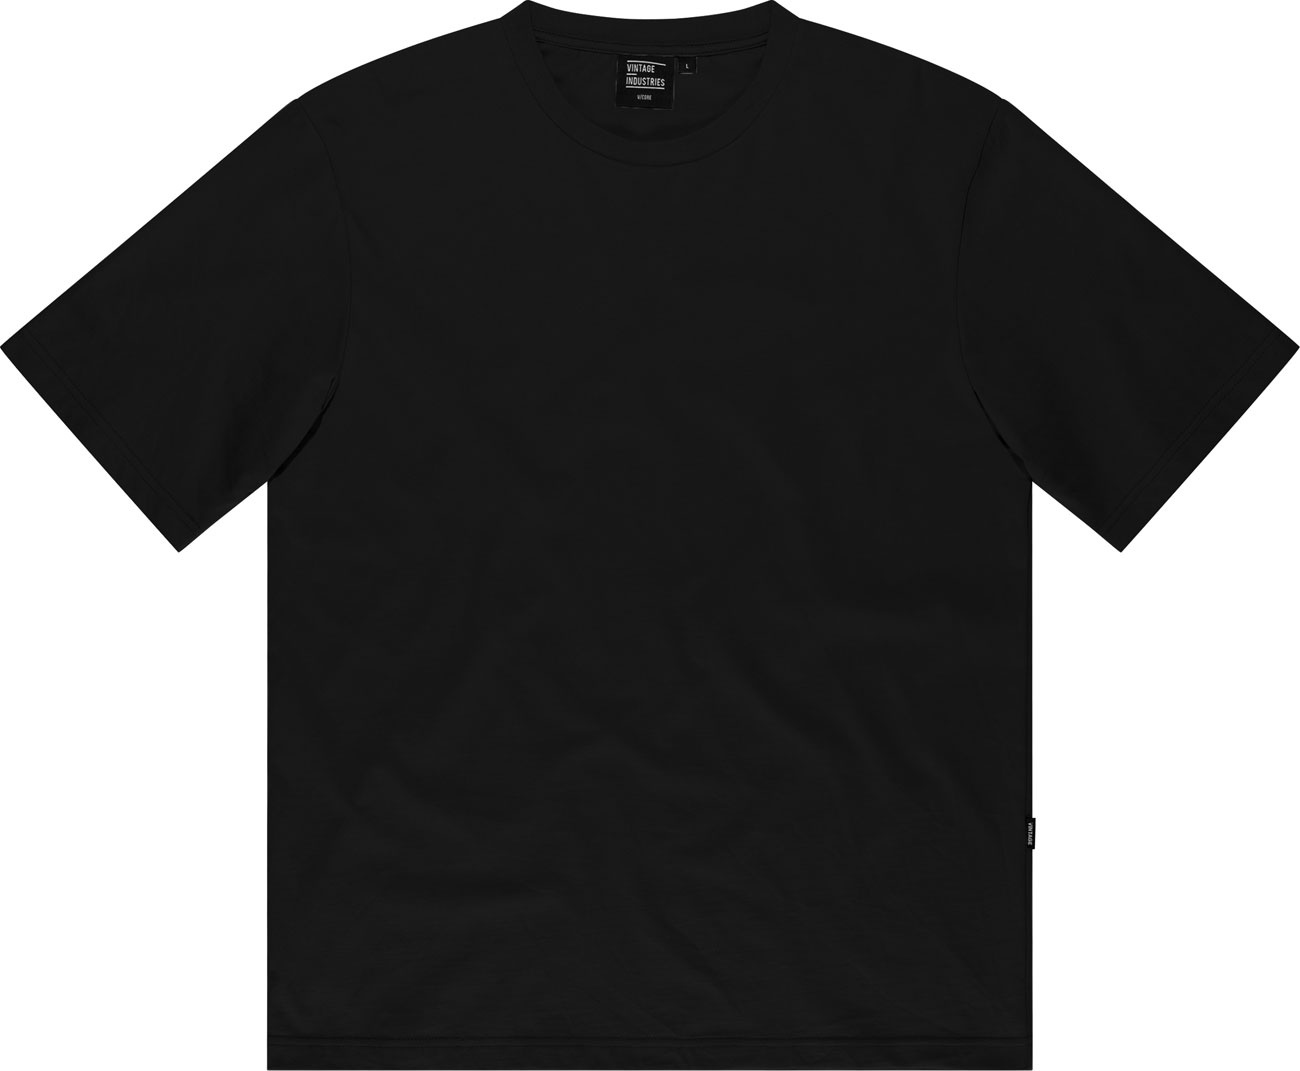 Vintage Industries Lex, t-shirt - Noir - 3XL